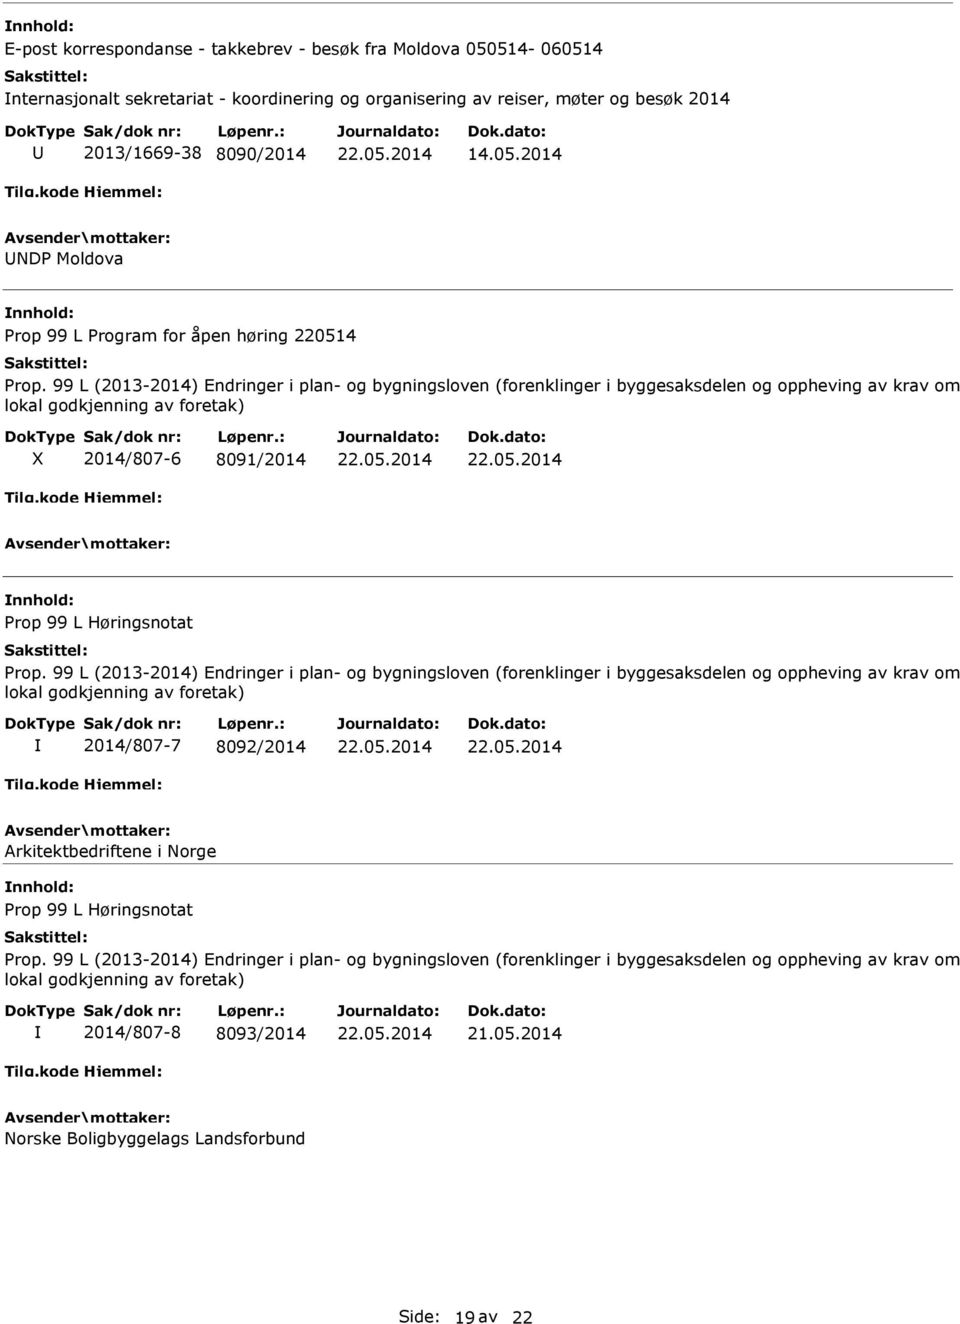 99 L (2013-2014) Endringer i plan- og bygningsloven (forenklinger i byggesaksdelen og oppheving av krav om lokal godkjenning av foretak) 2014/807-7 8092/2014 Arkitektbedriftene i Norge Prop 99 L